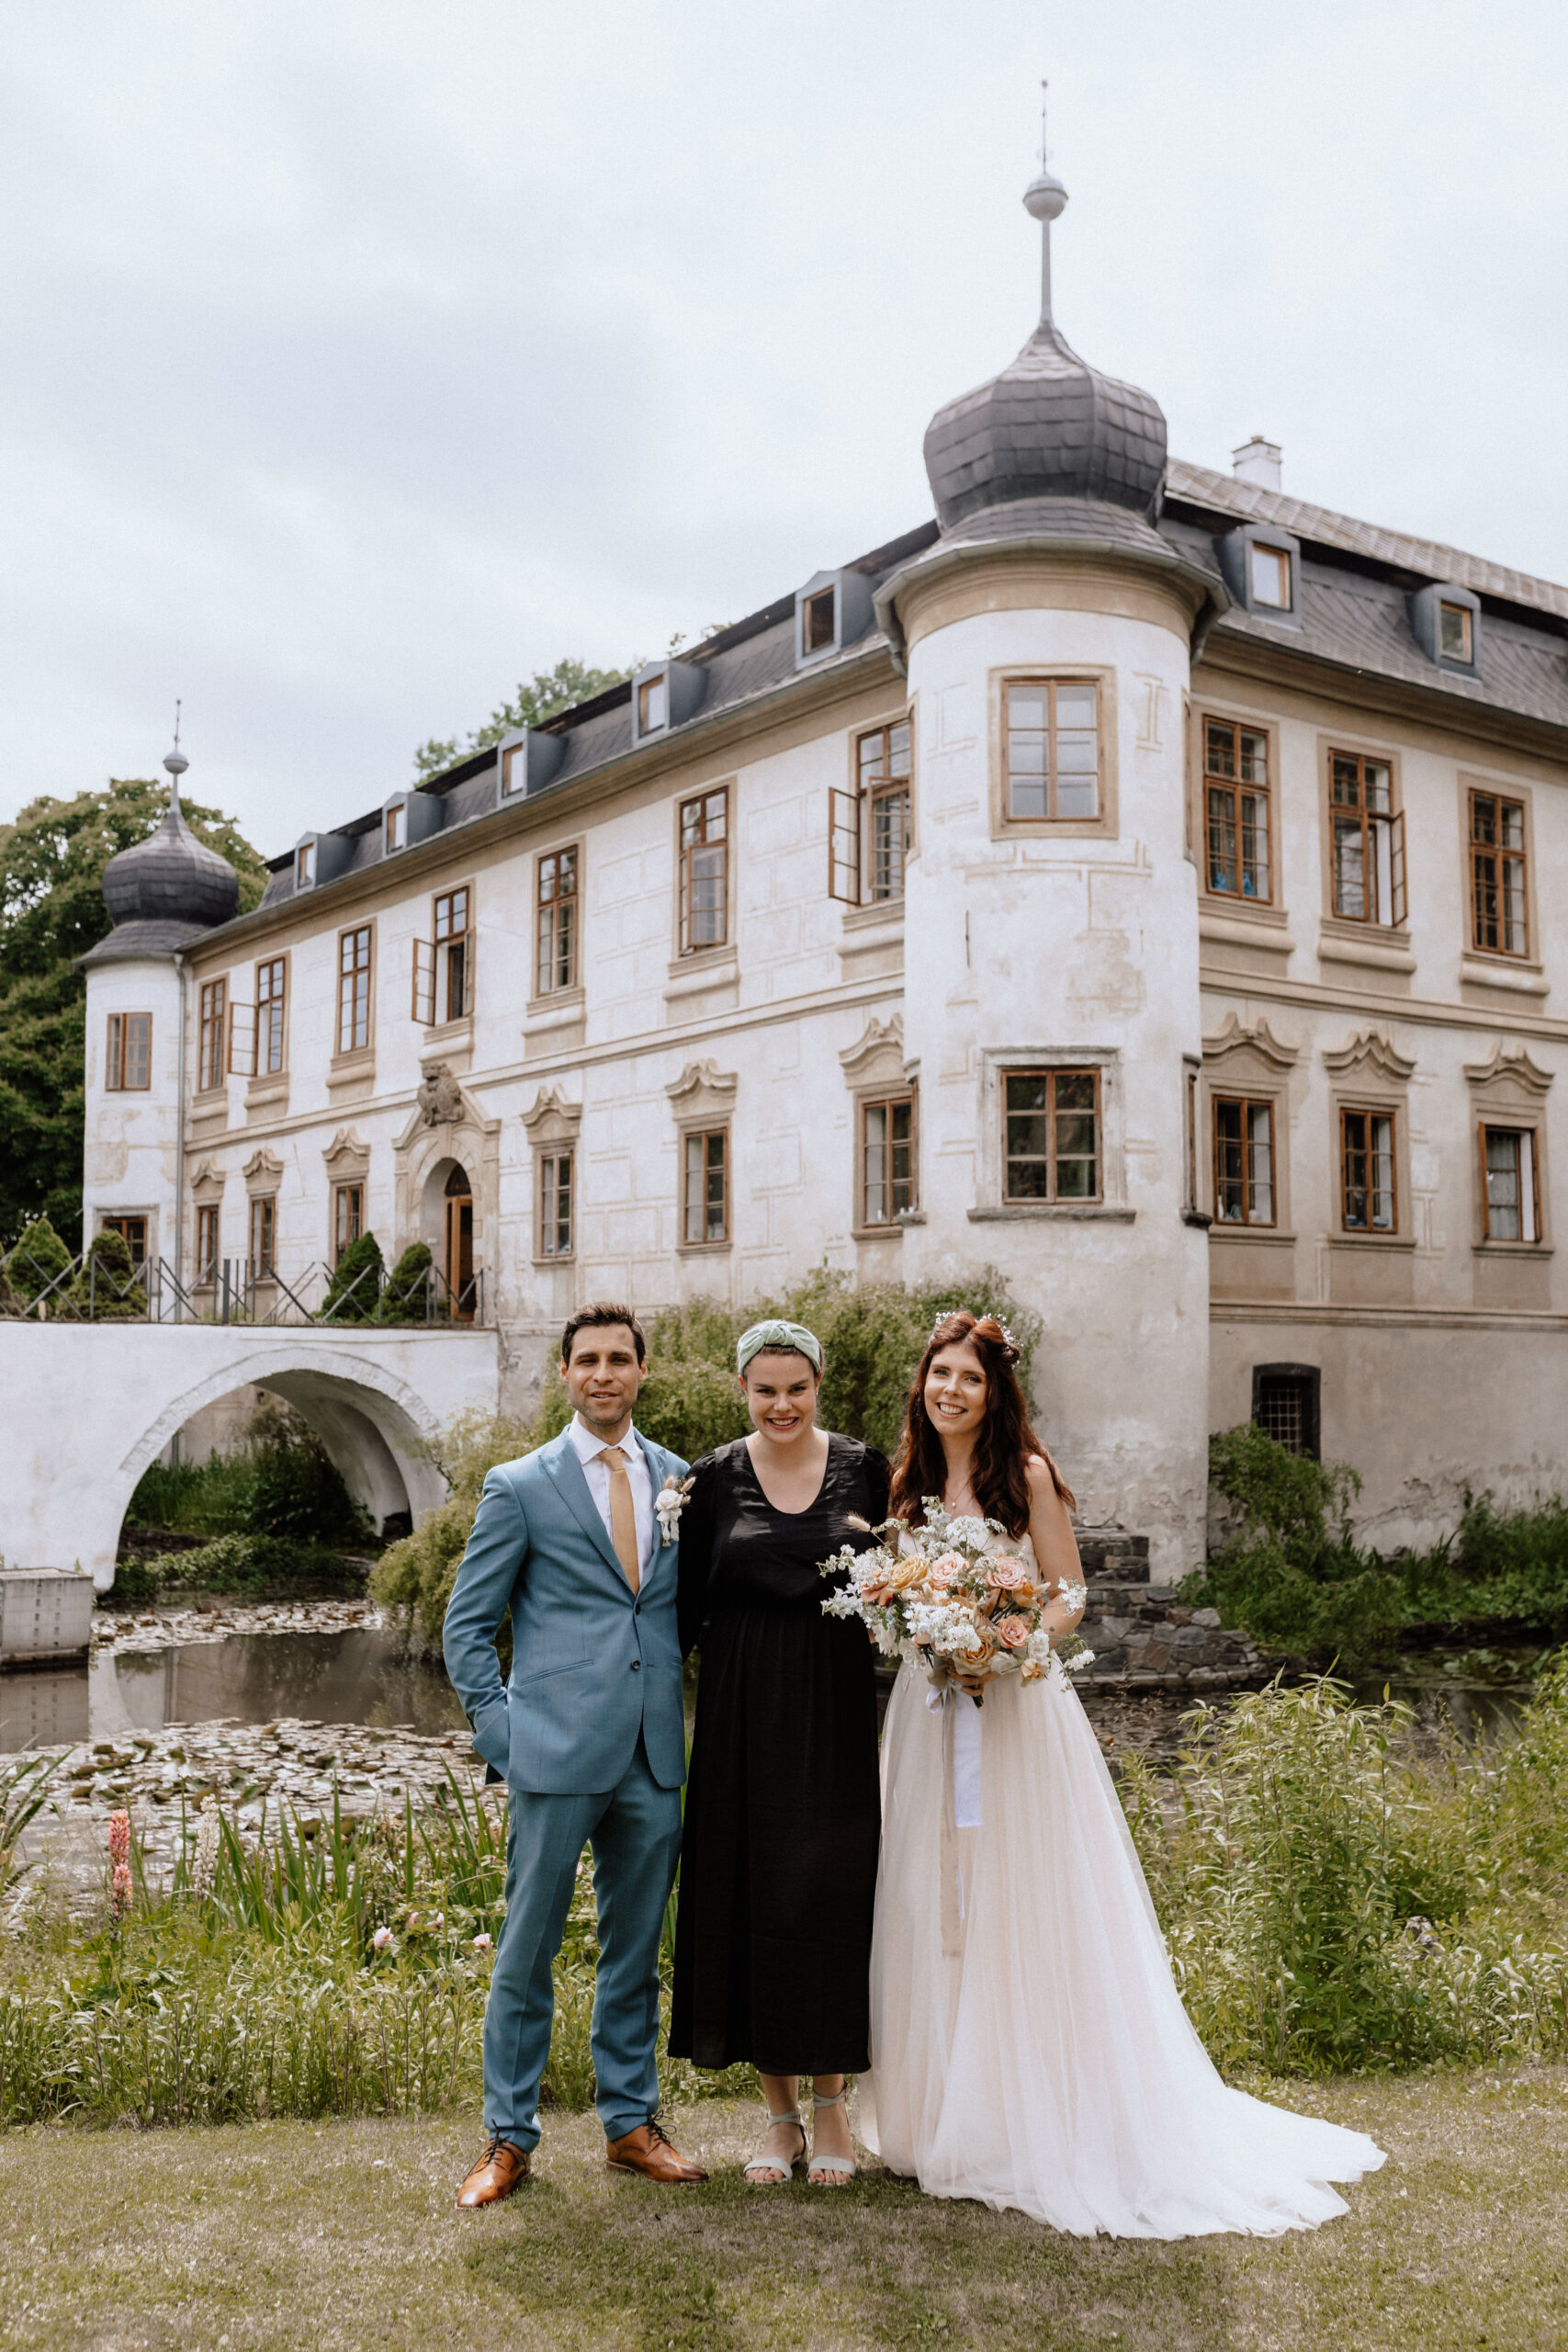 Laura & Yannick - Weddings in Prague - Julie May